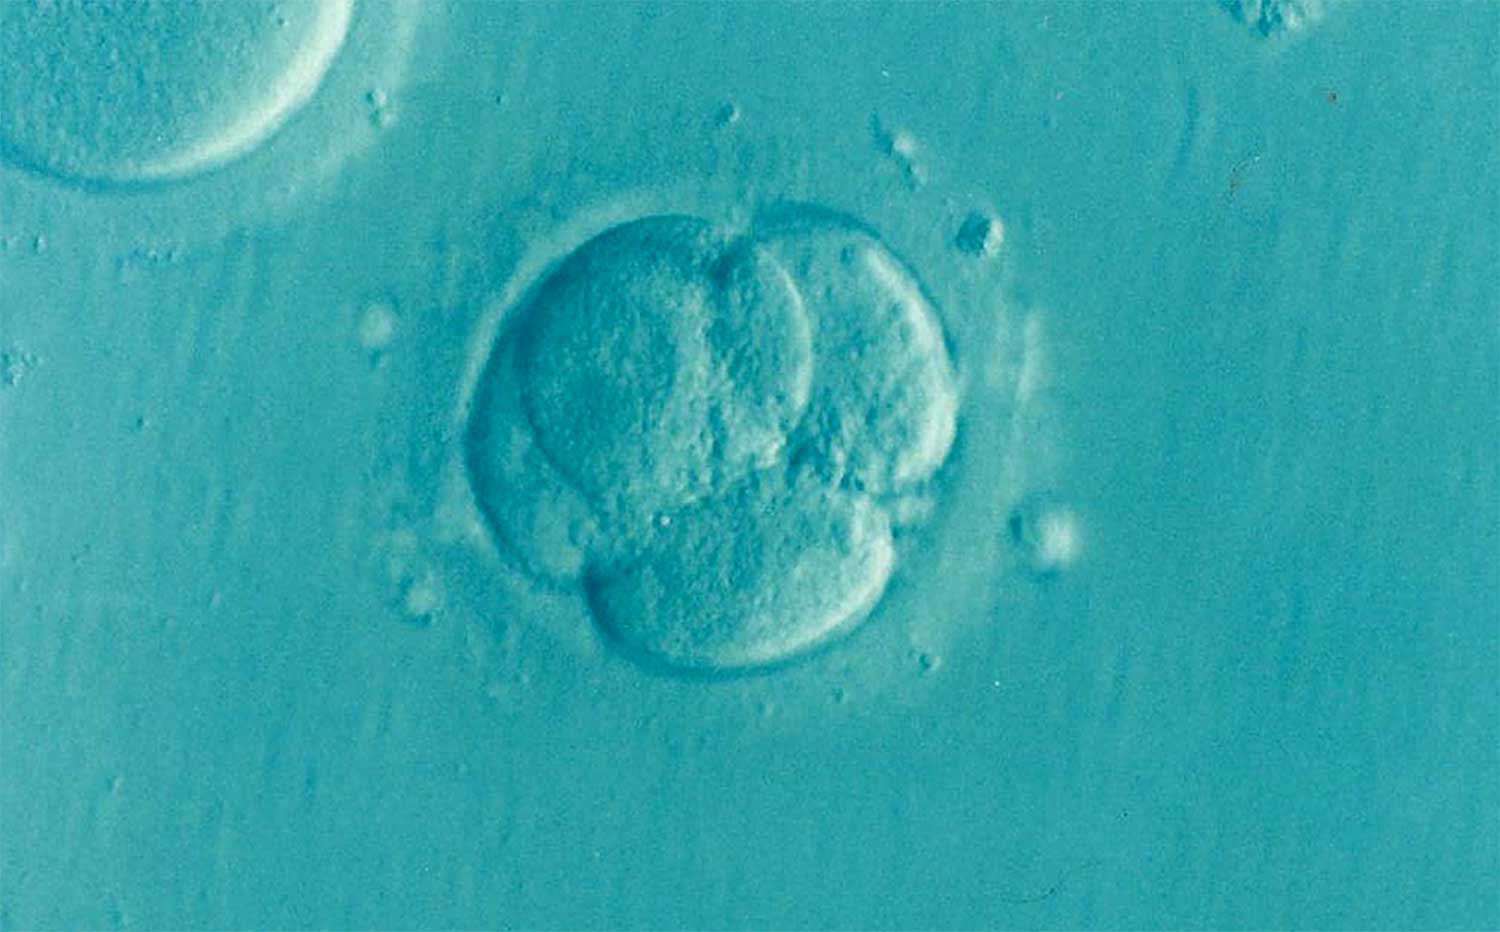  Embryo’s in Nederlands laboratorium gemaakt zonder zaad- en eicel